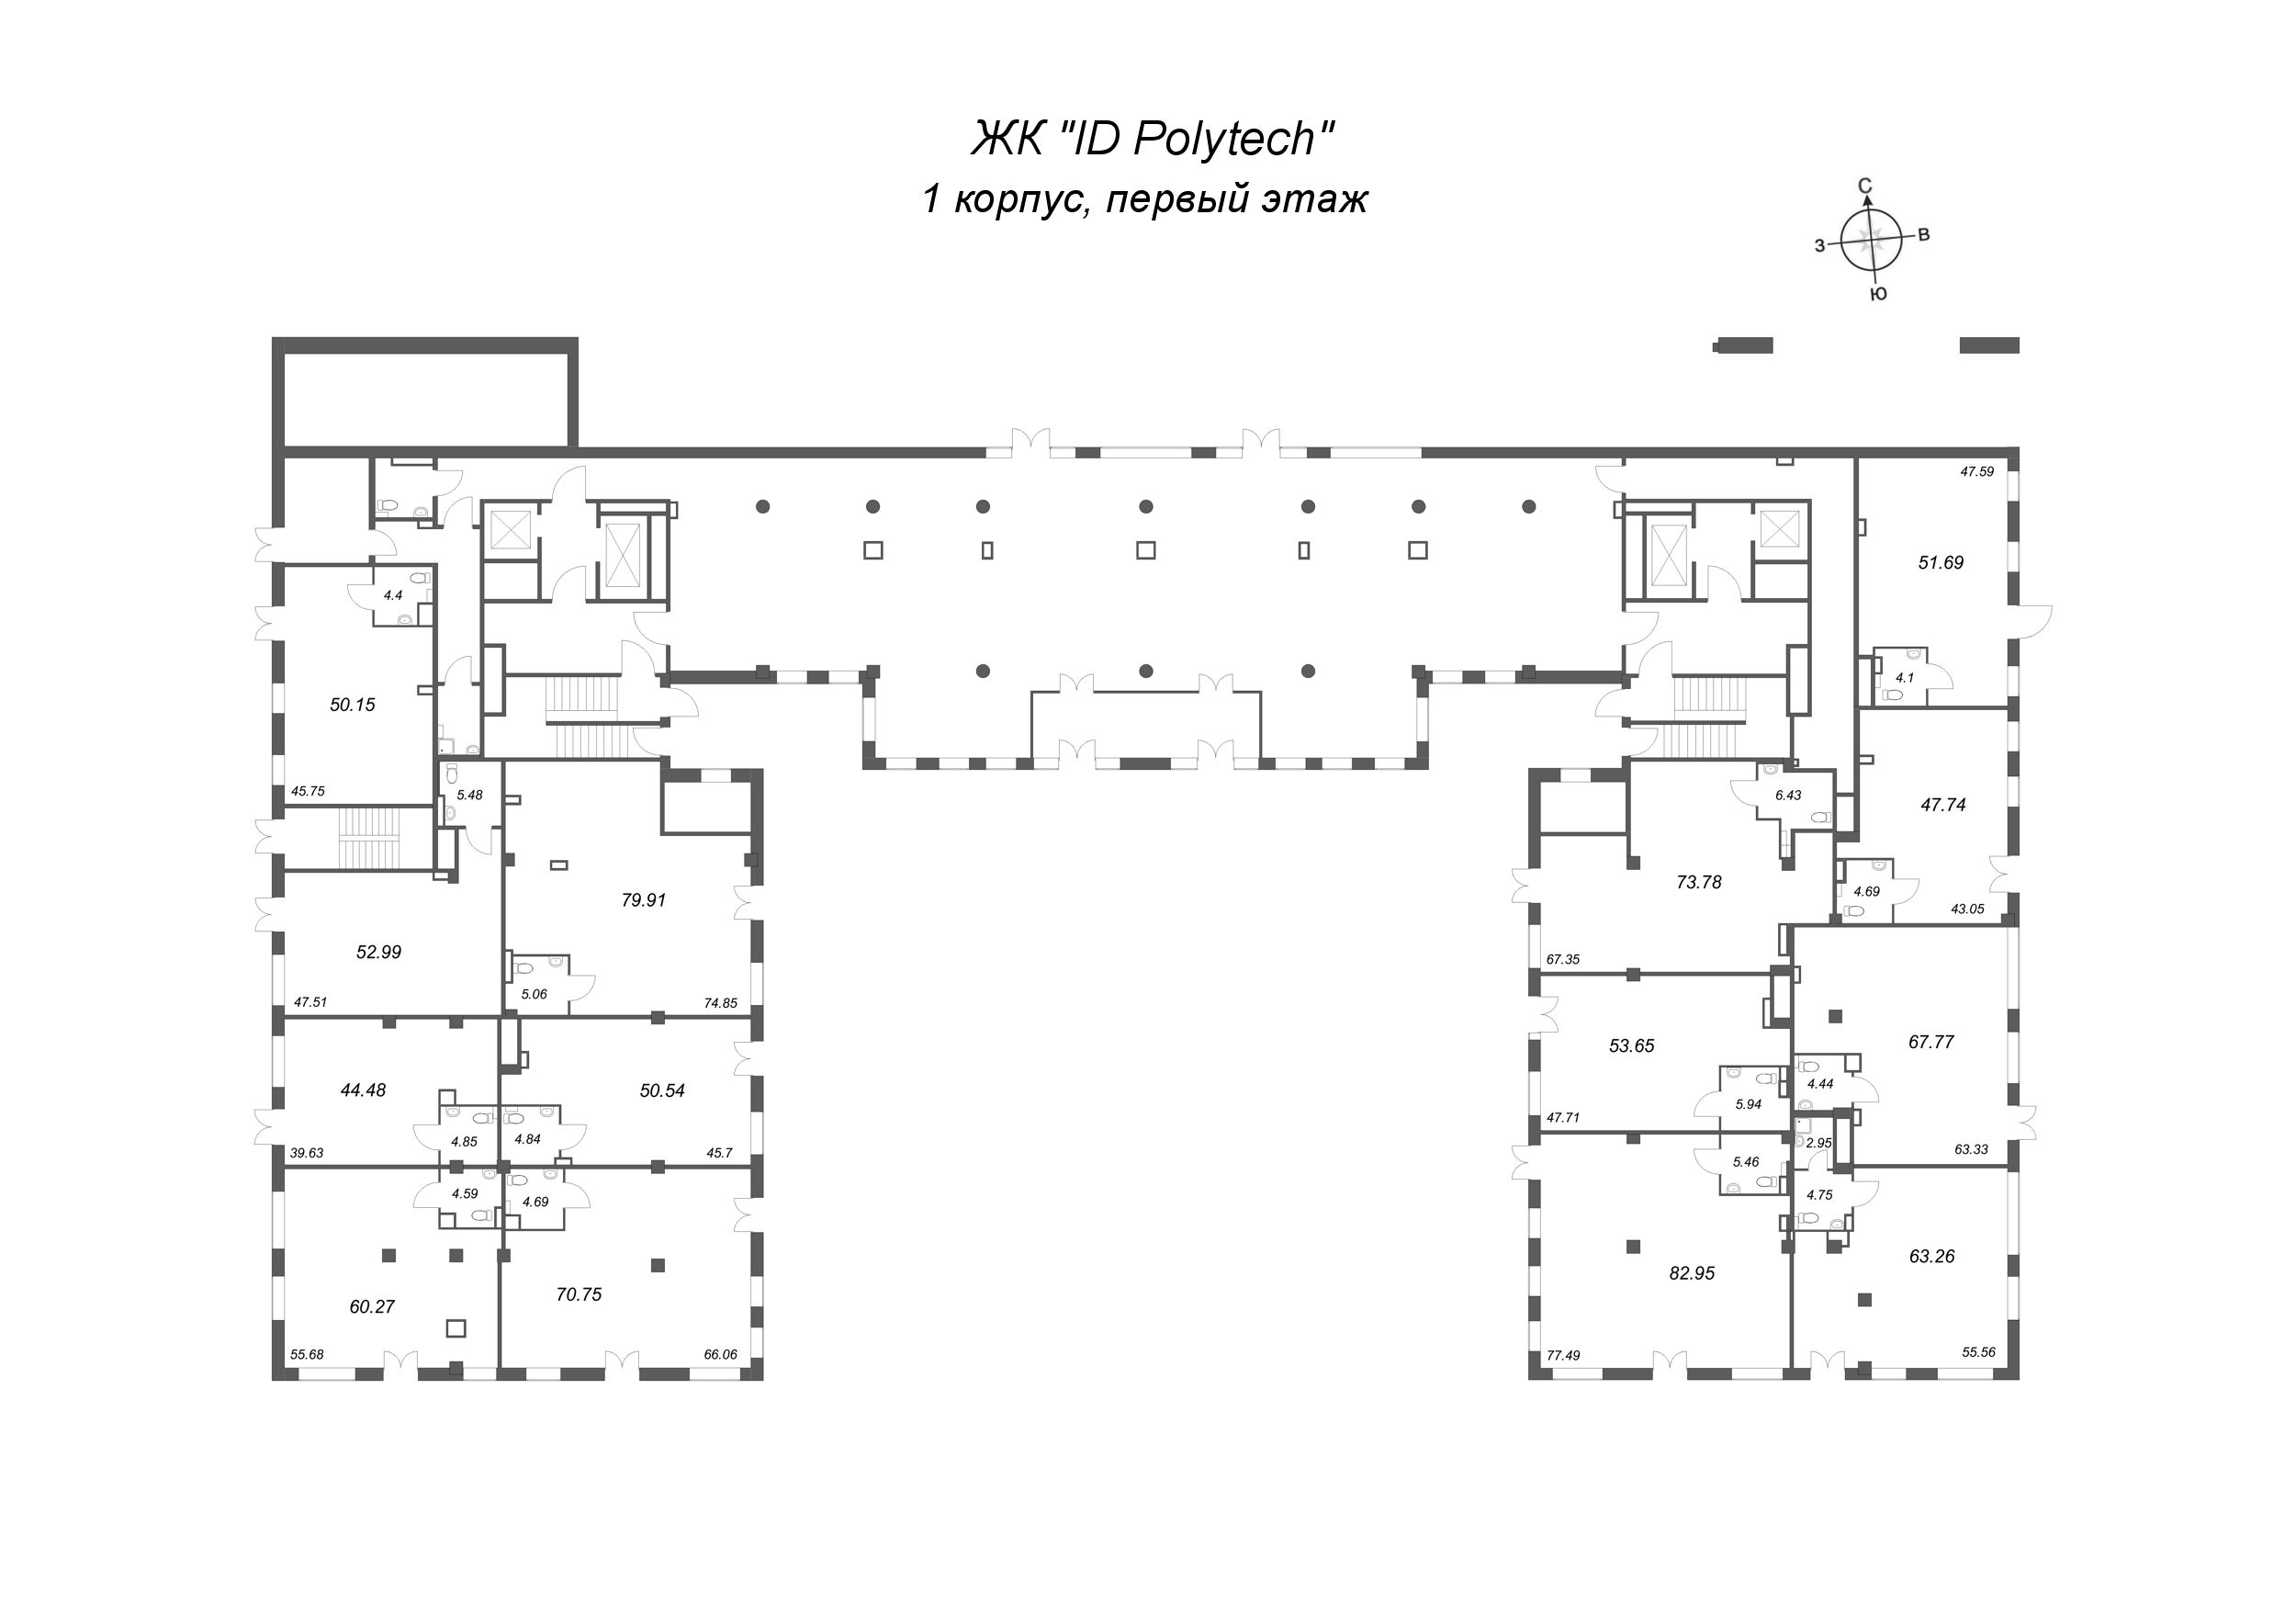 Помещение, 47.74 м² в ЖК "ID Polytech" - планировка этажа